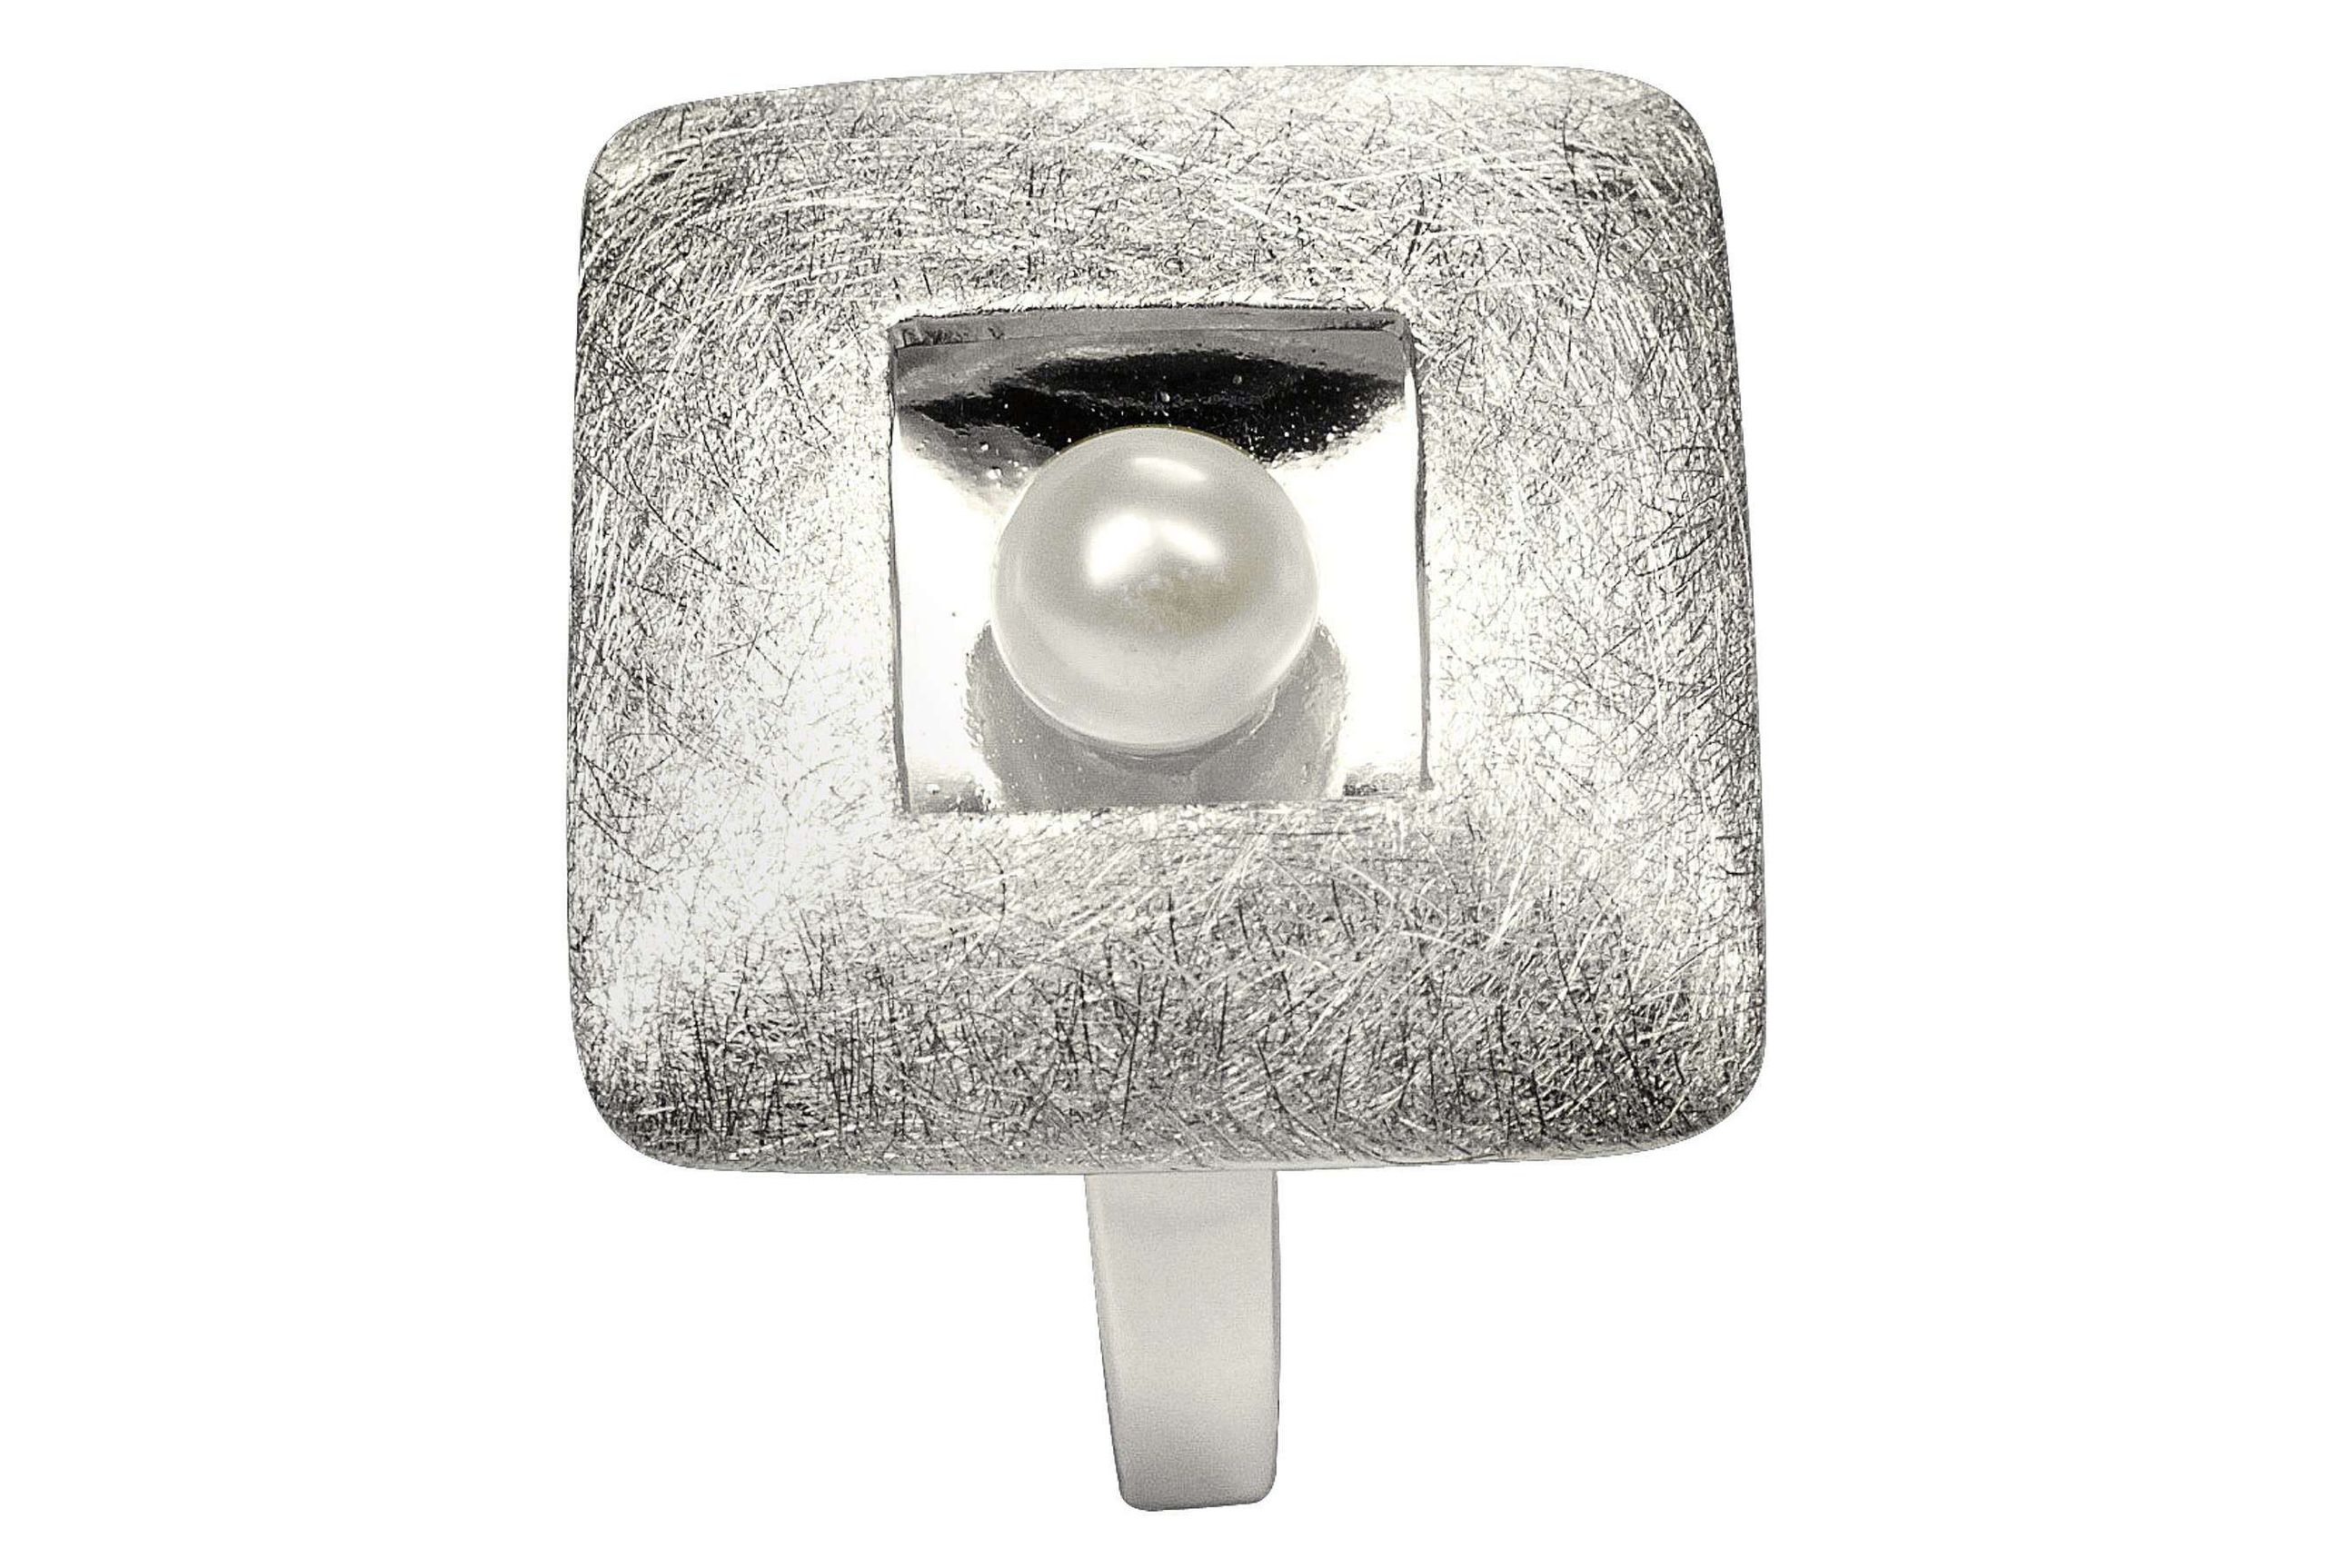 XL Ring "Quadrat mit Perle"